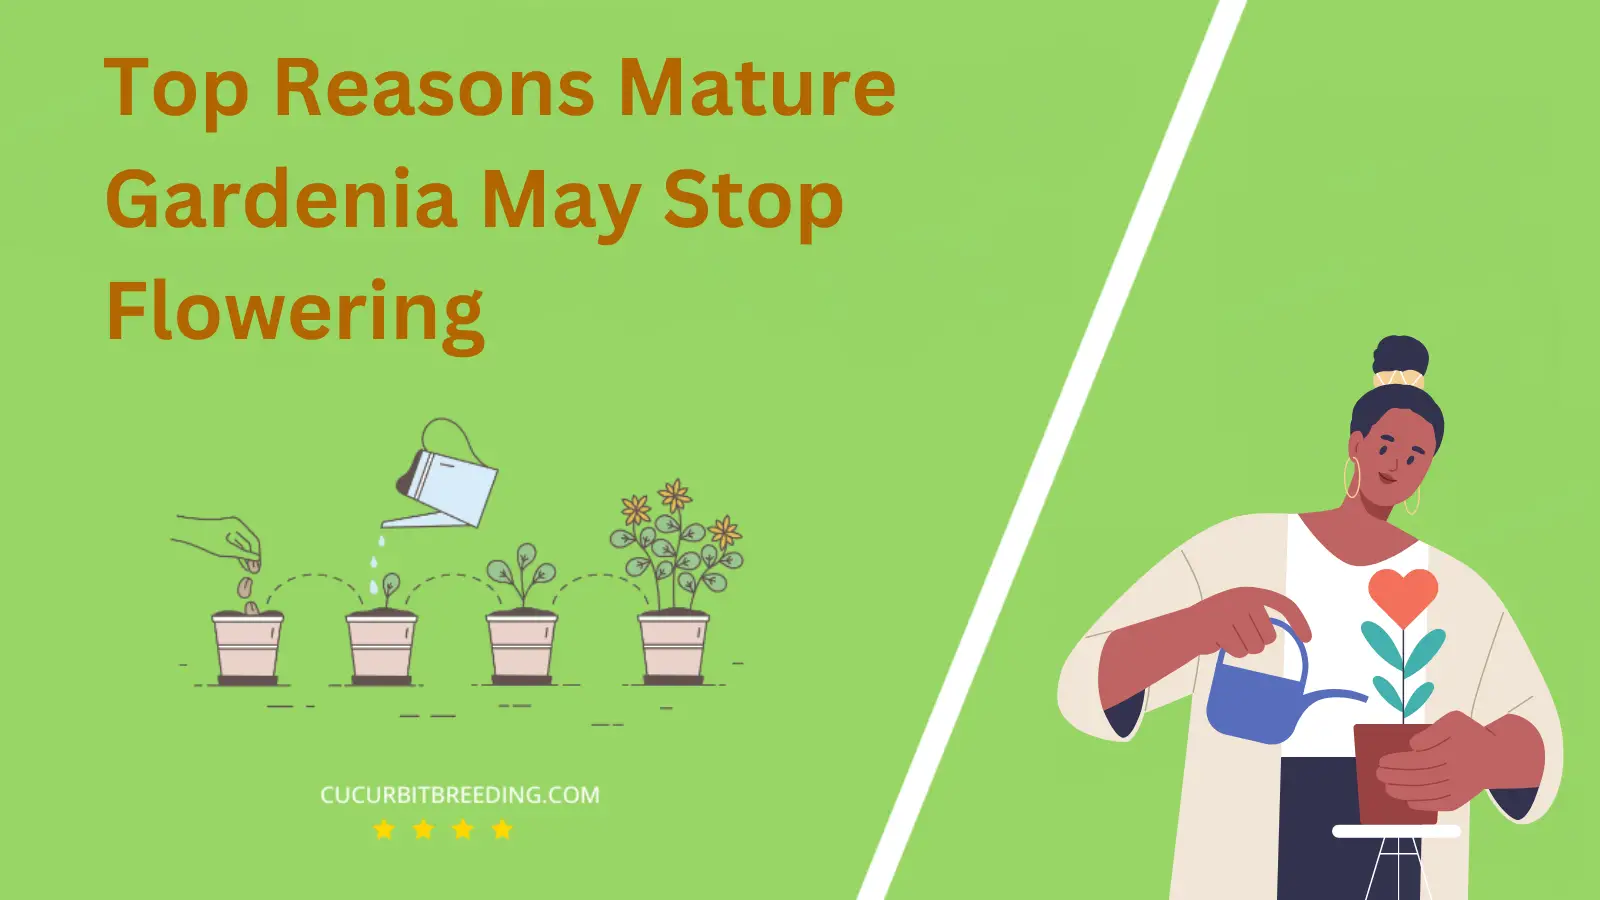 Top Reasons Mature Gardenia May Stop Flowering